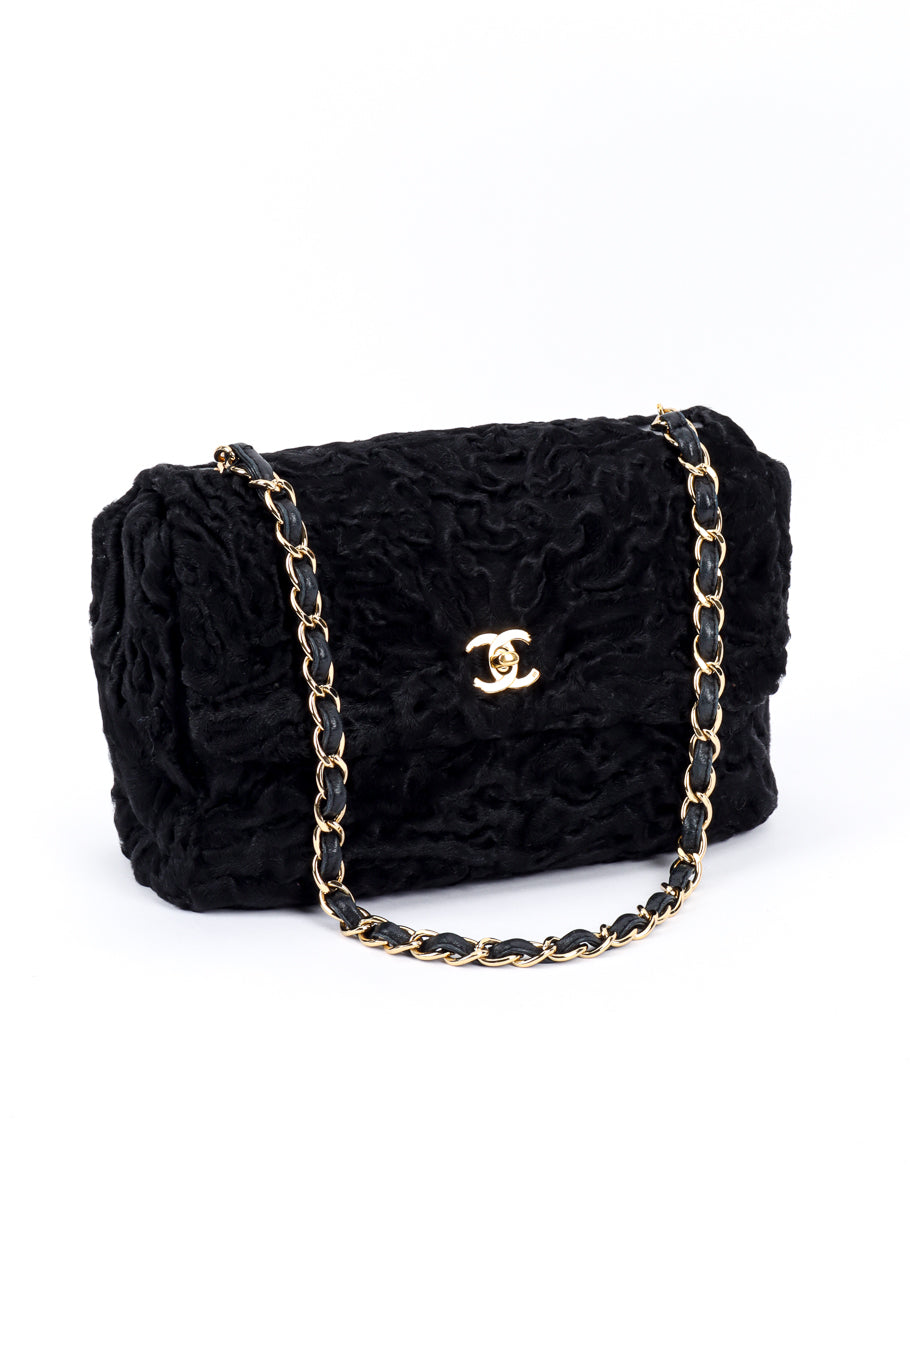 Chanel Persian Lamb Shoulder Bag 3/4 front @recess la